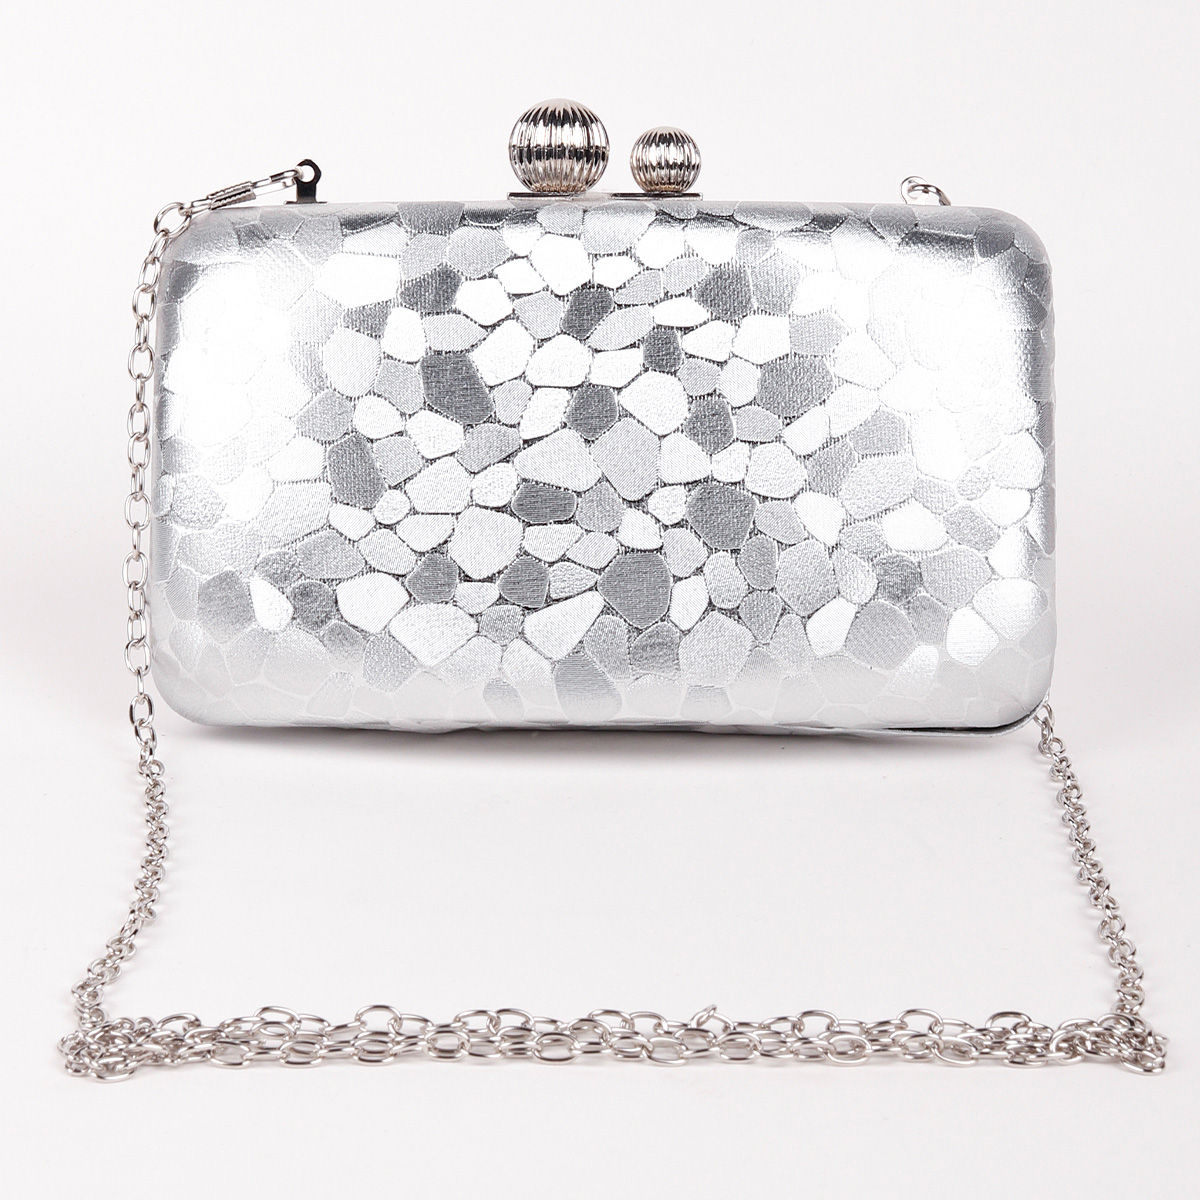 vrps handicrafts Female Designer Crystal Flap clutch bags